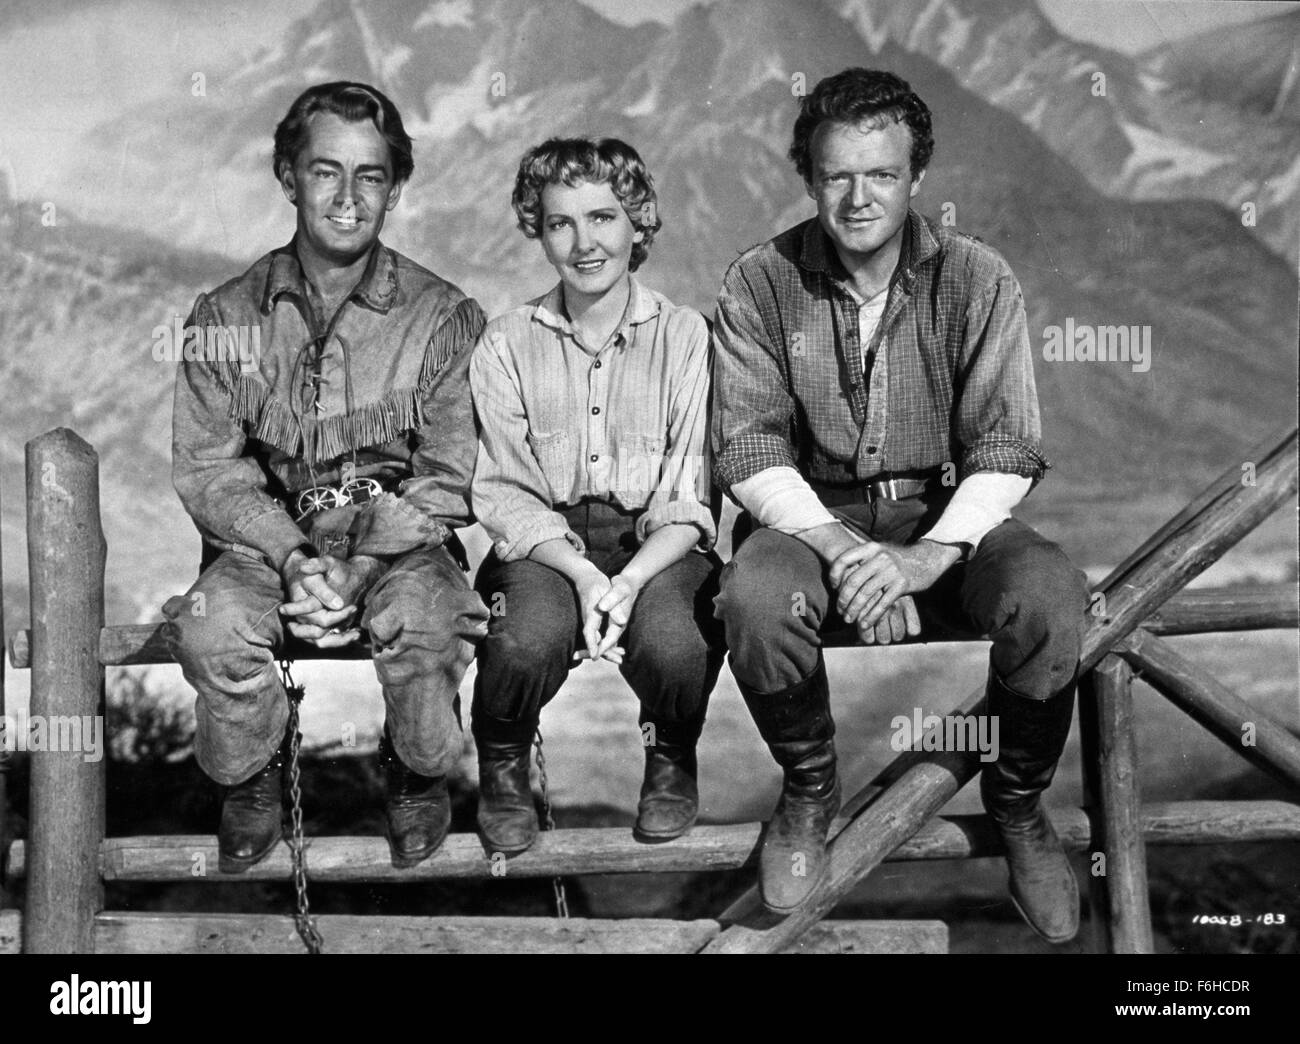 1953, le titre du film : Shane, Directeur : GEORGE STEVENS, sur la photo : JEAN ARTHUR, VAN HEFLIN, ALAN LADD. (Crédit Image : SNAP) Banque D'Images